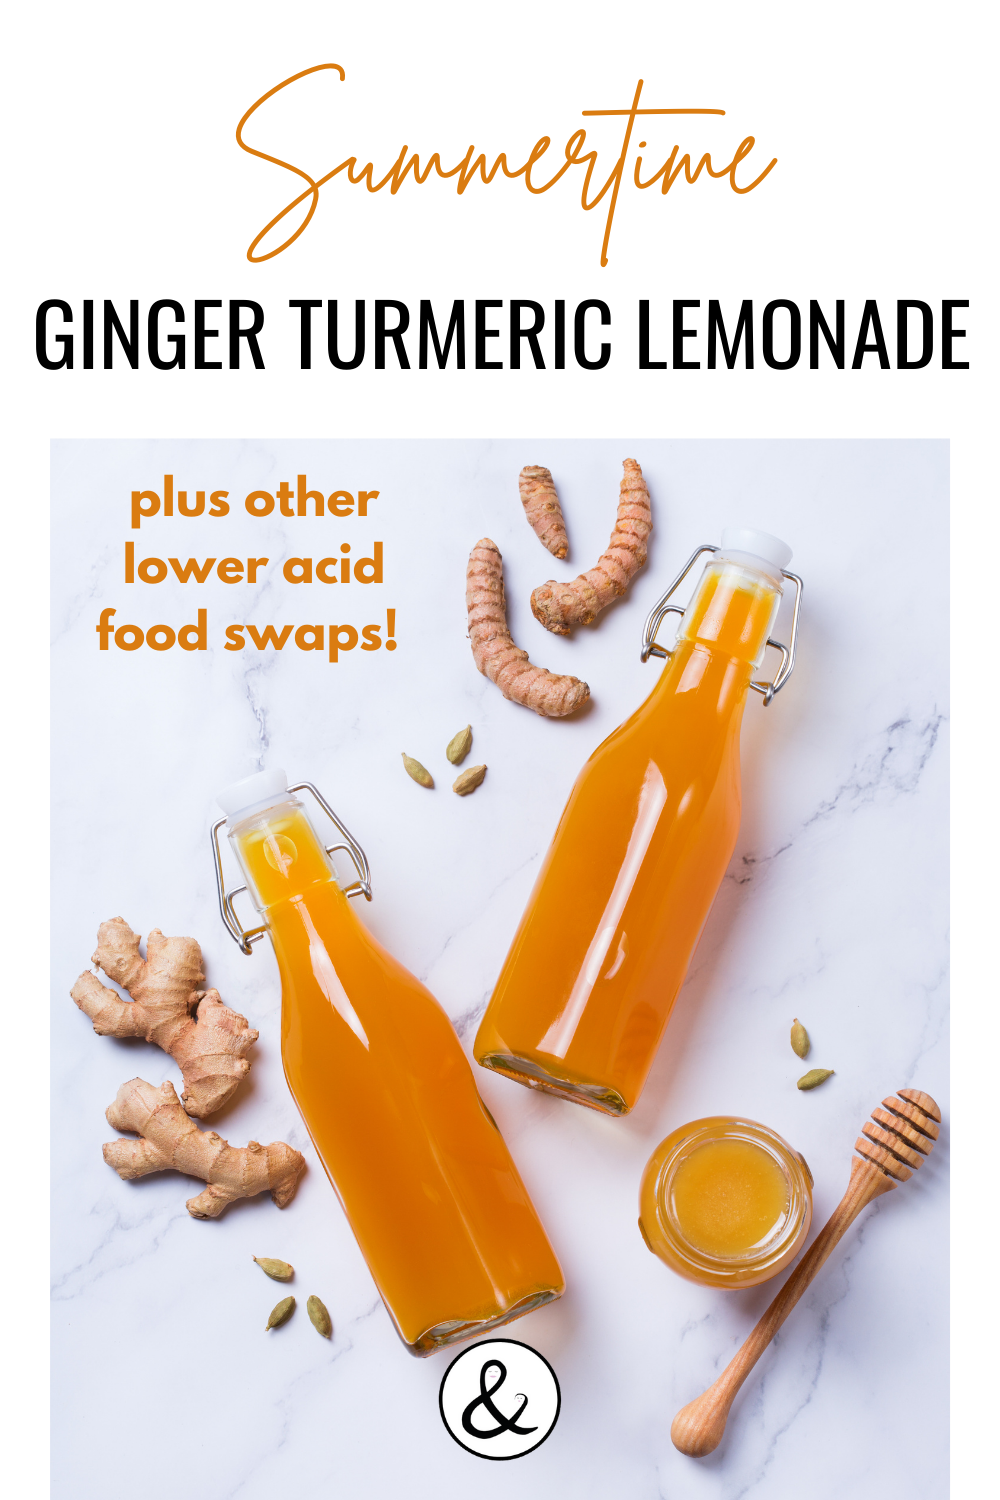 Summertime Ginger Turmeric Lemonade - Plus Lower Acid Food Swaps